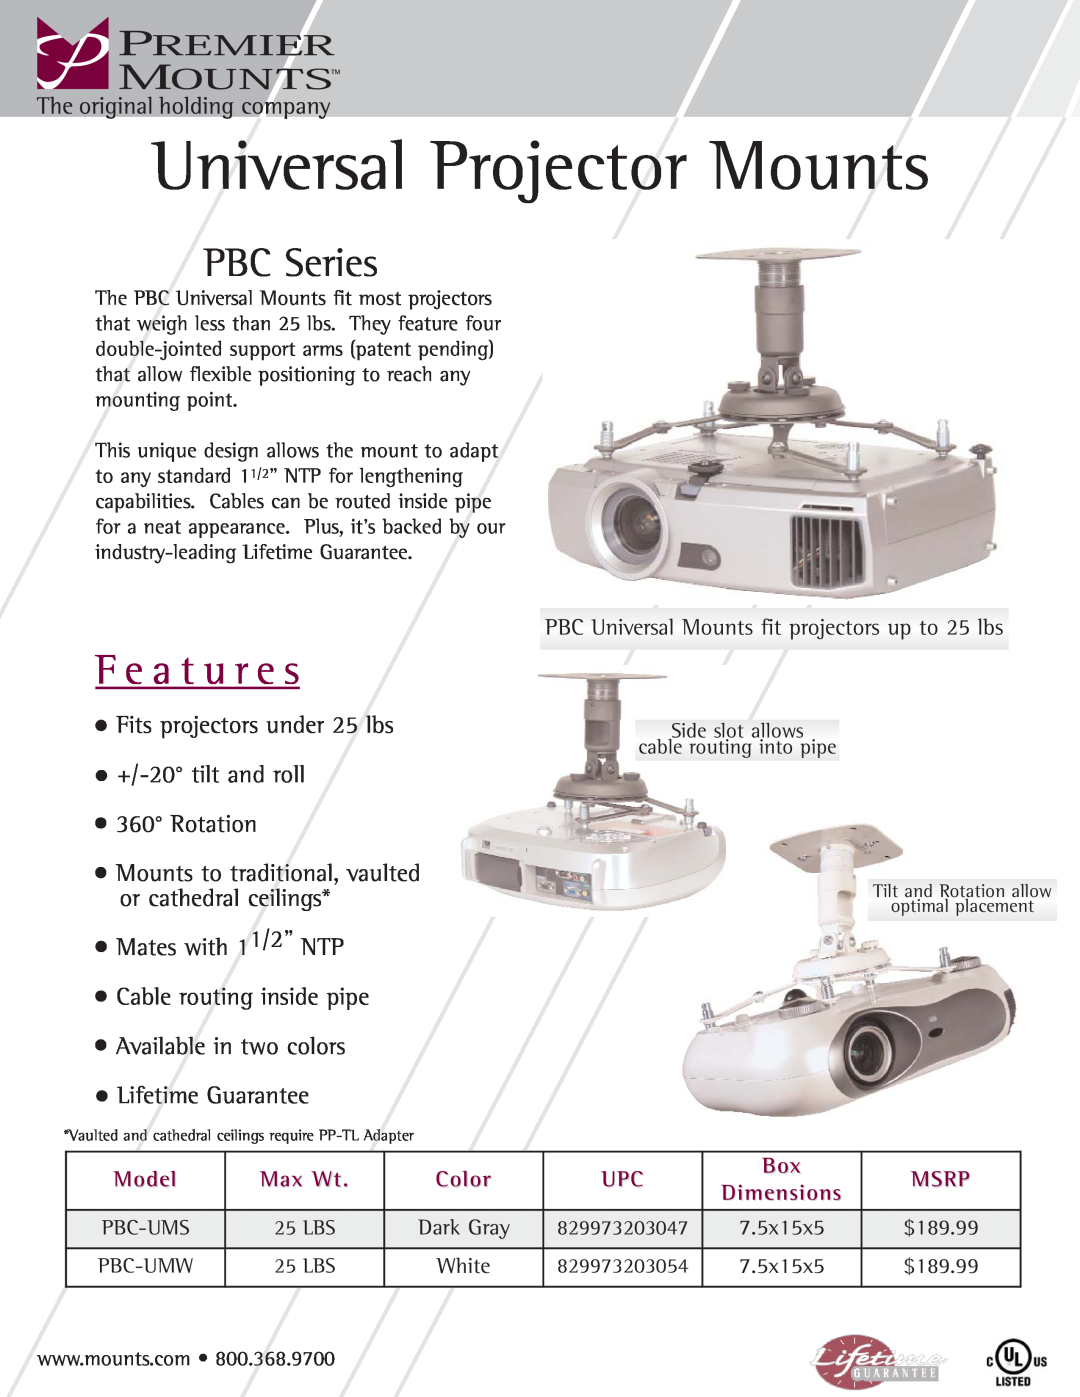 Premier Mounts PBC-UMS manual Universal Projector Mounts, F e a t u r e s, PBC Series, Rotation, Model, Max Wt, Color 